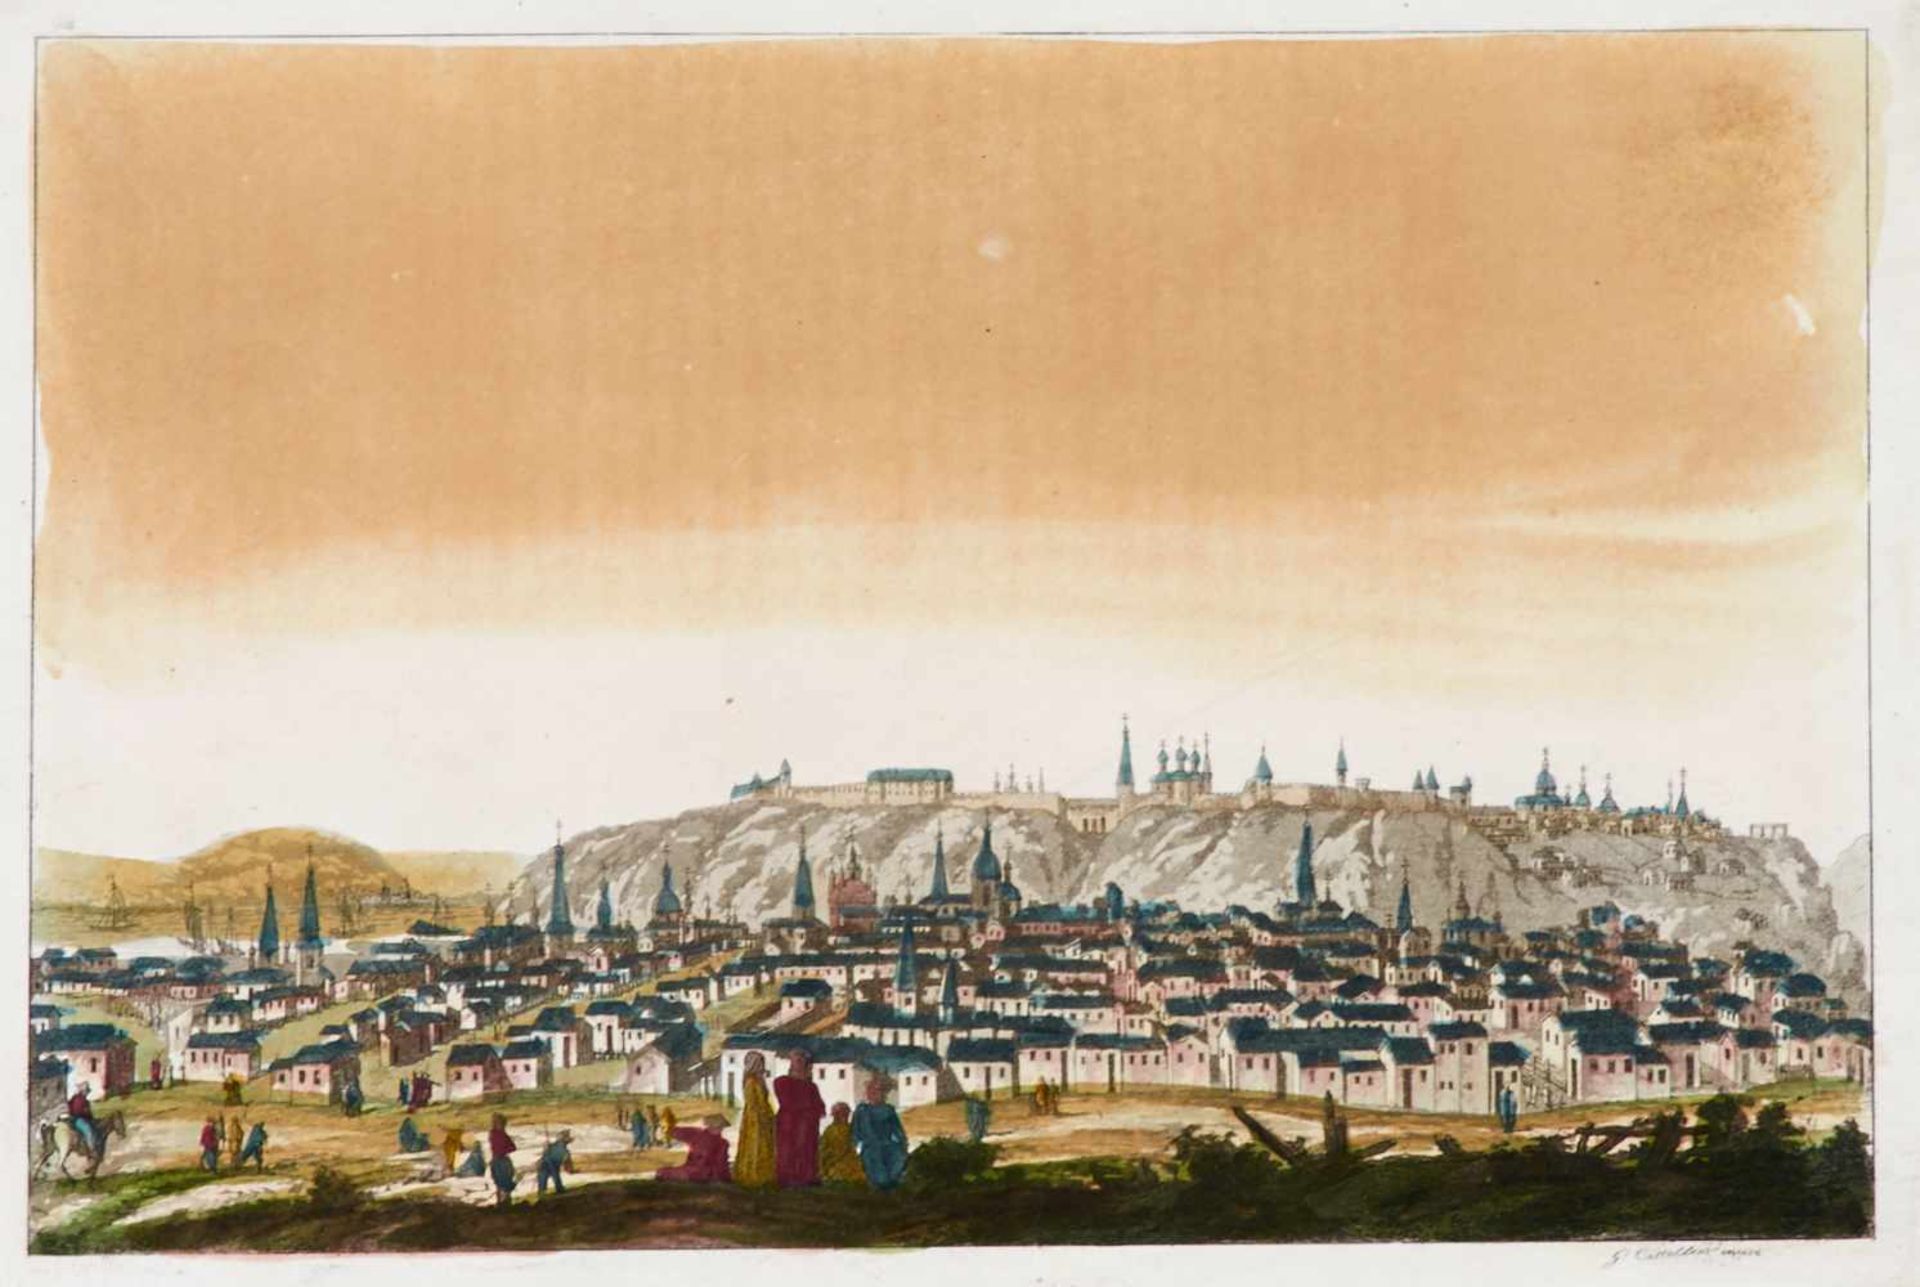 Russland- Tjumen - "Tobolsk". Kupferstichkarte. Wohl um 1820.49 x 78 cm (Blattgr.: 63 x 94 cm). - - Bild 3 aus 3